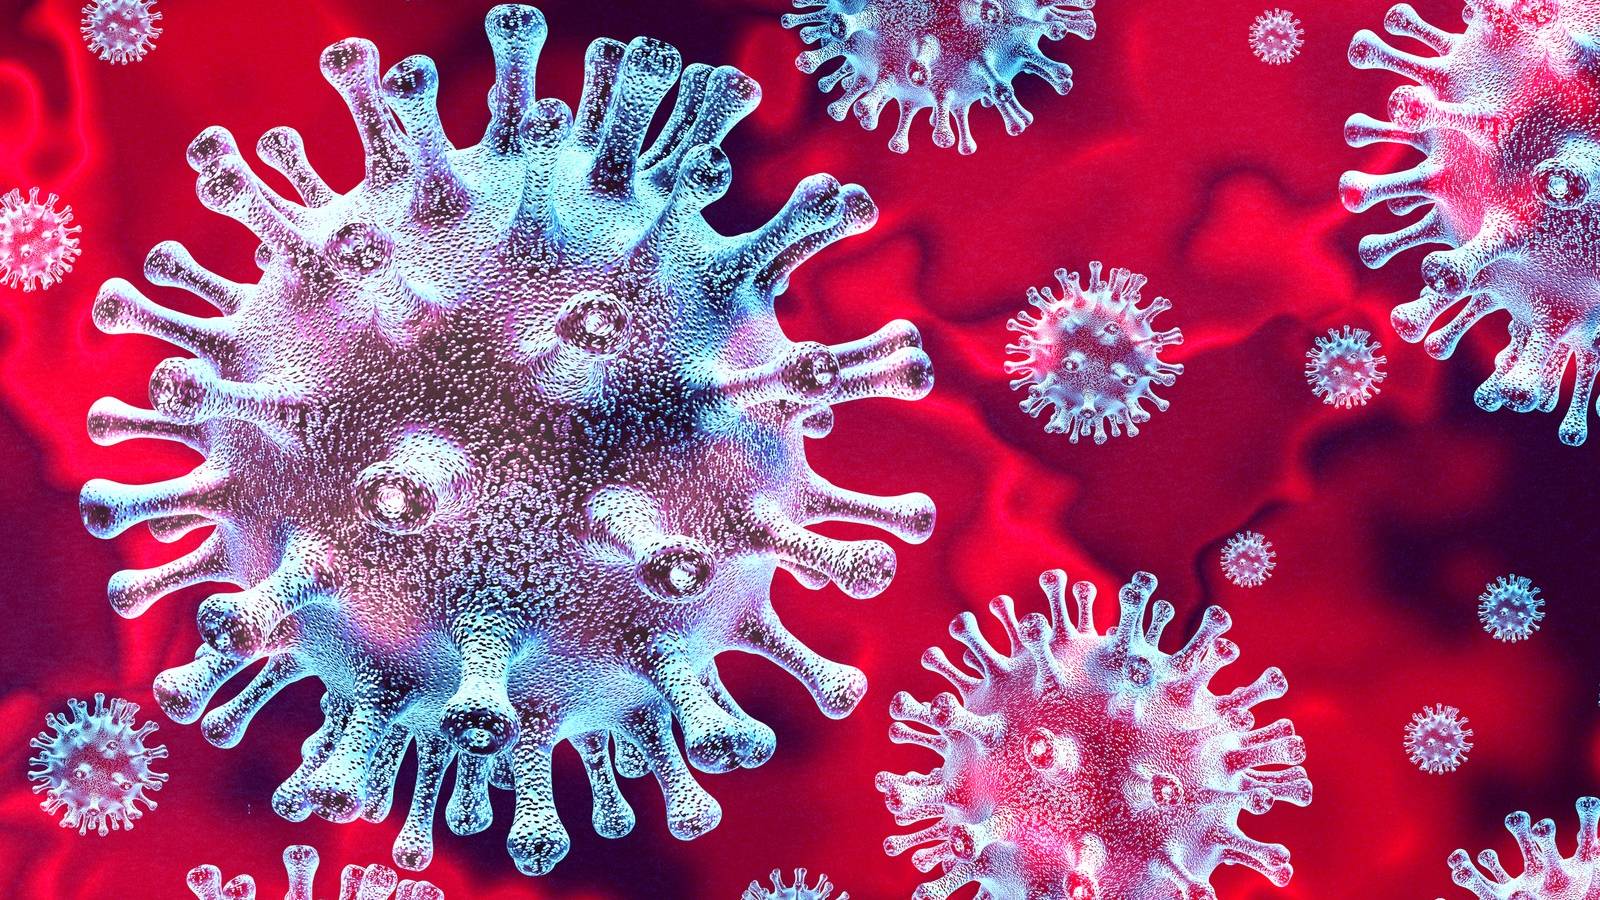 Gevallen van coronavirus Roemenië genezen op 18 mei